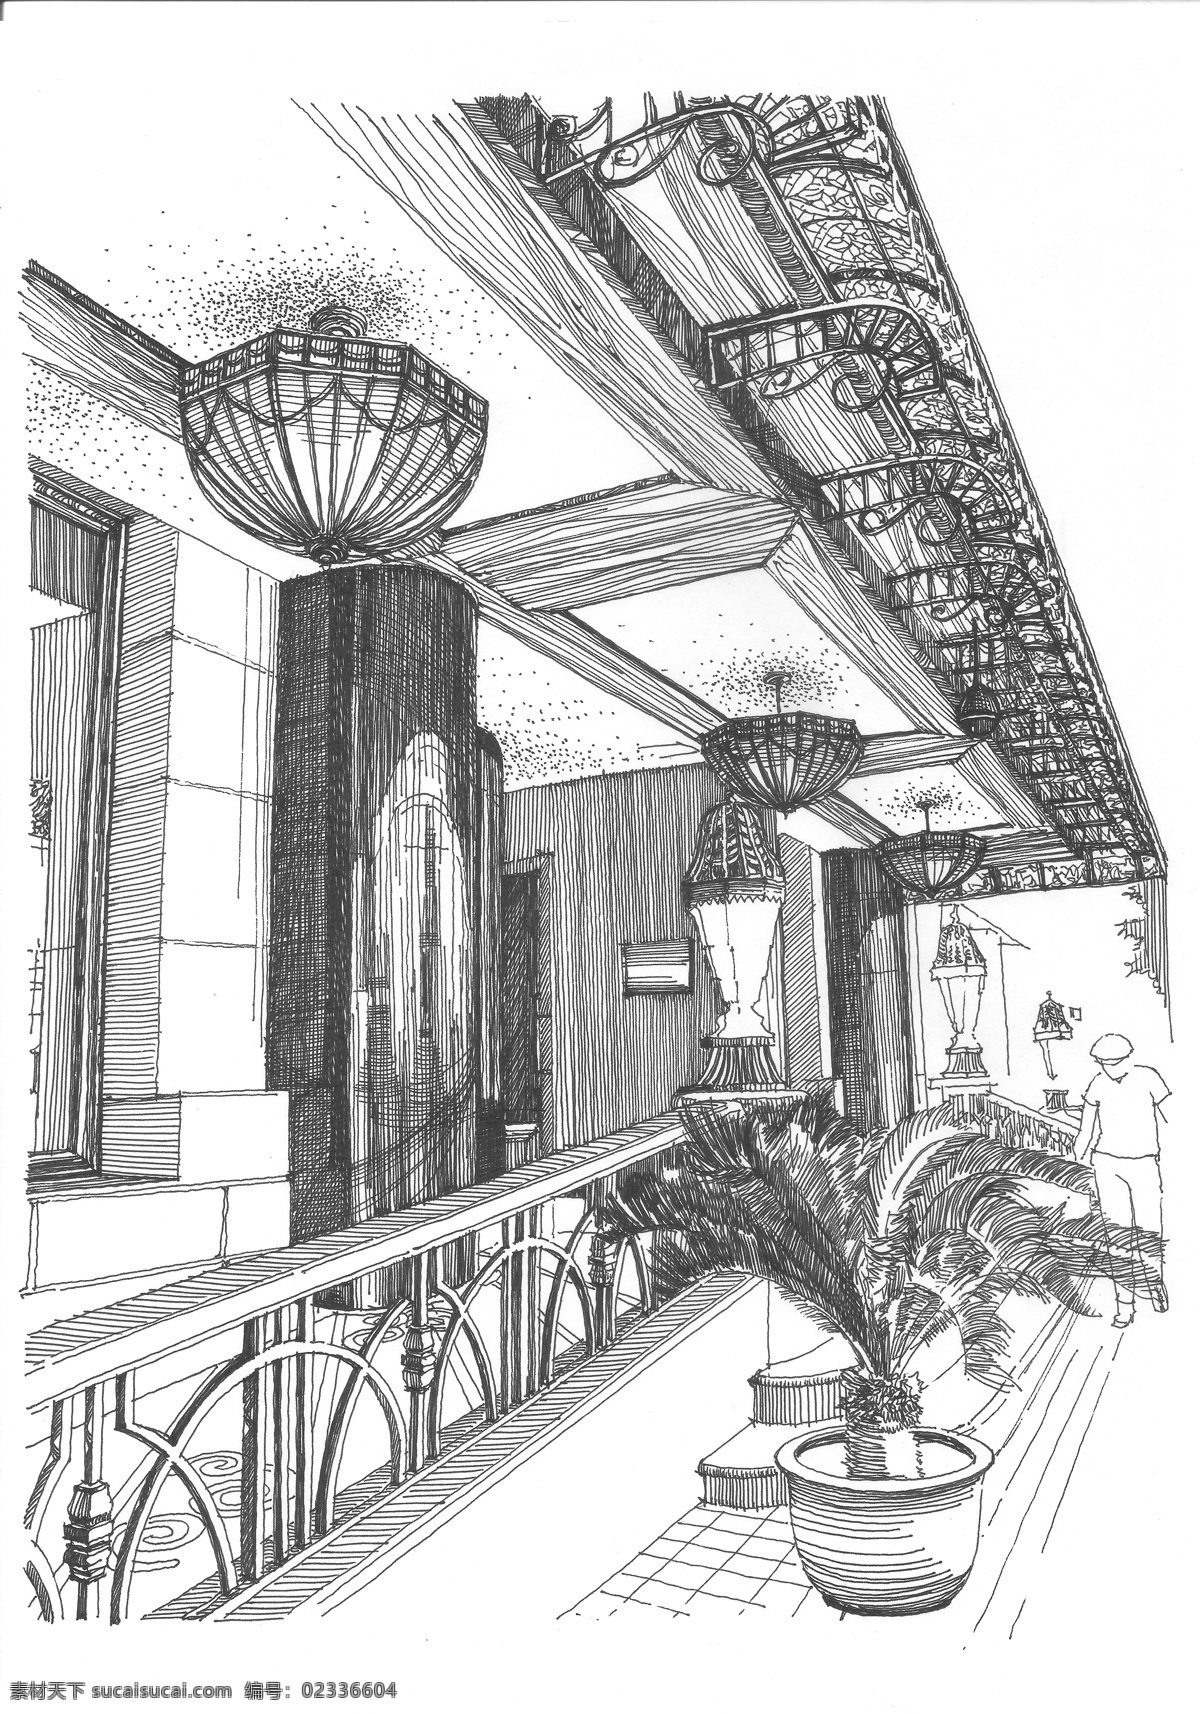 哈尔滨 国际饭店 精细钢笔画 速写 黑白钢笔画 手绘 单色画 建筑风景画 白描图 文化艺术 绘画书法